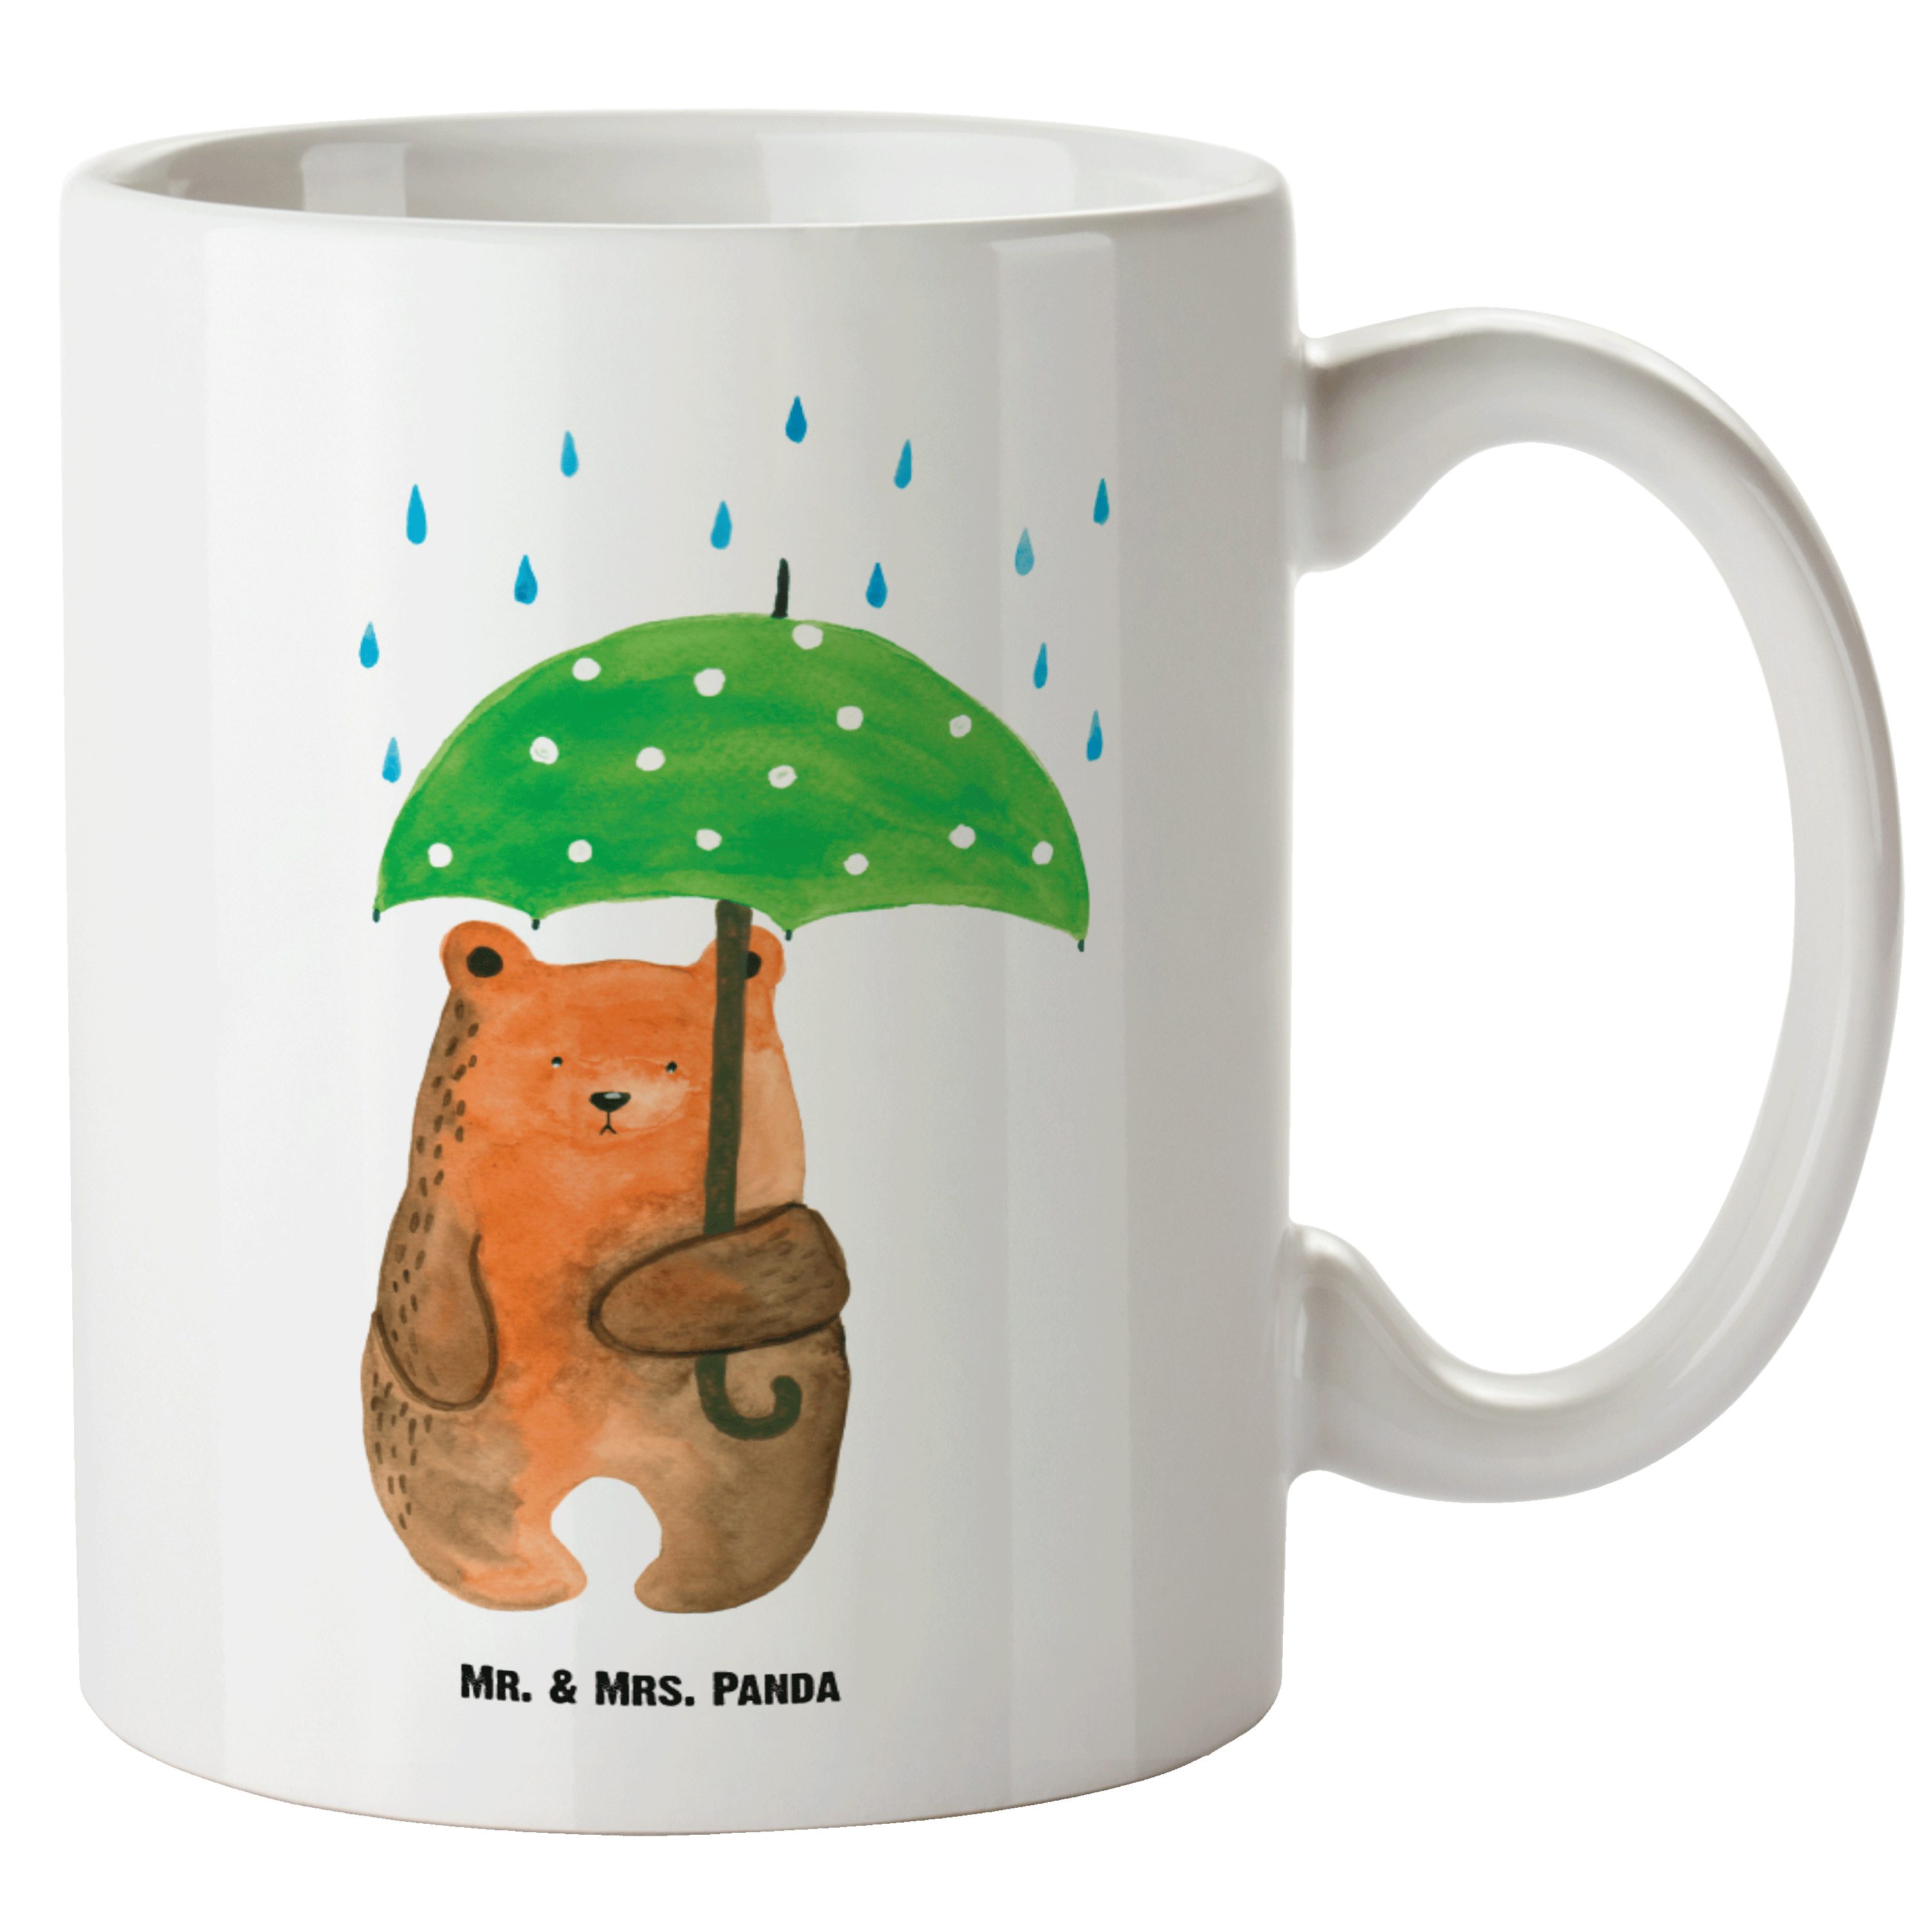 Mr. & Mrs. Panda Tasse Bär mit Regenschirm - Weiß - Geschenk, Familie, Groß, Teddy, Liebesbe, XL Tasse Keramik